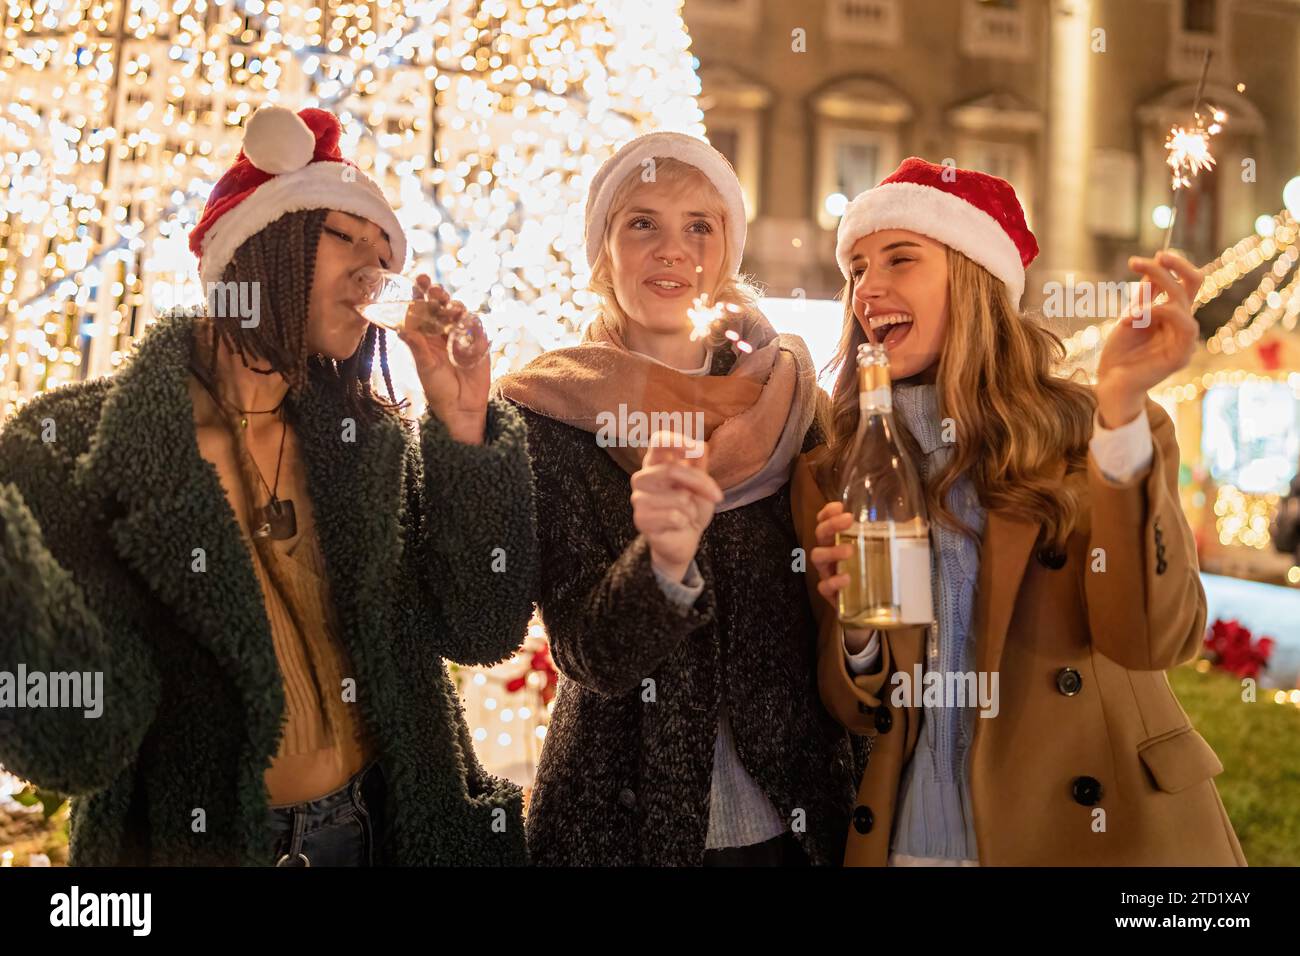 Tre donne condividono risate e scintillanti, abbracciando lo spirito festivo con cappelli di Natale e una bottiglia di vino, illuminati dalle luci della città. Foto Stock